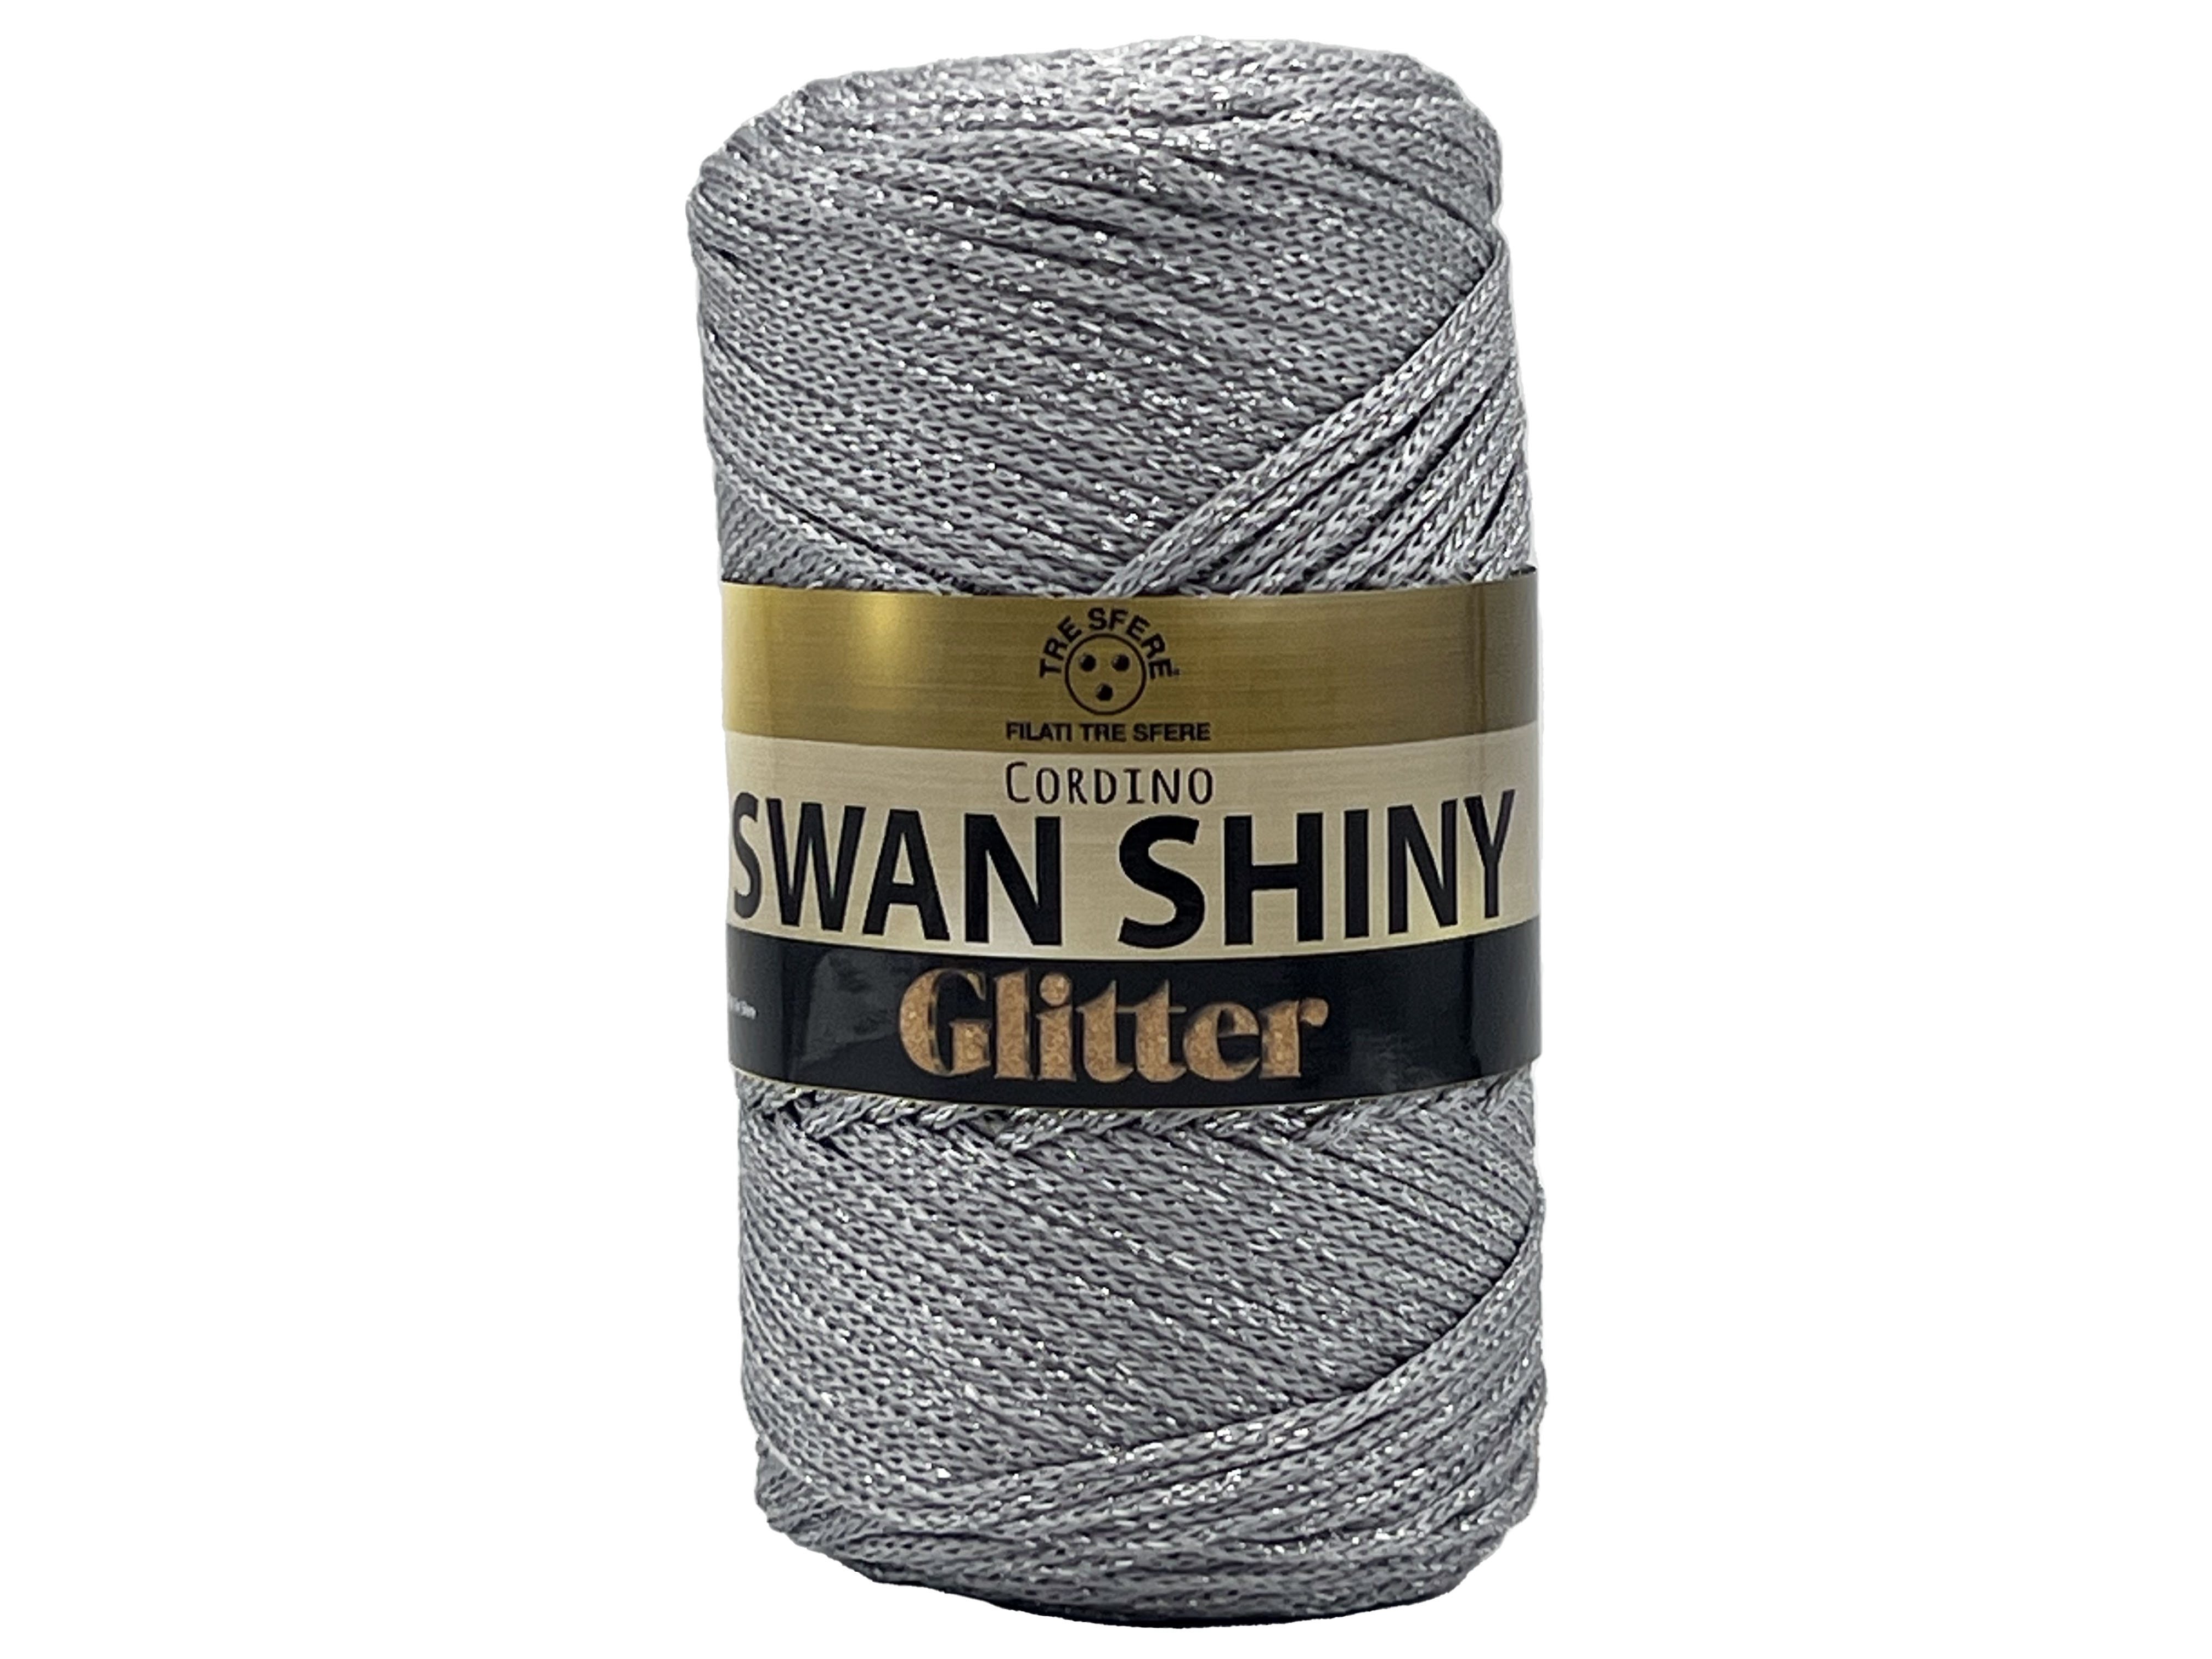 Příze šňůrková Swan shiny glitter šedá